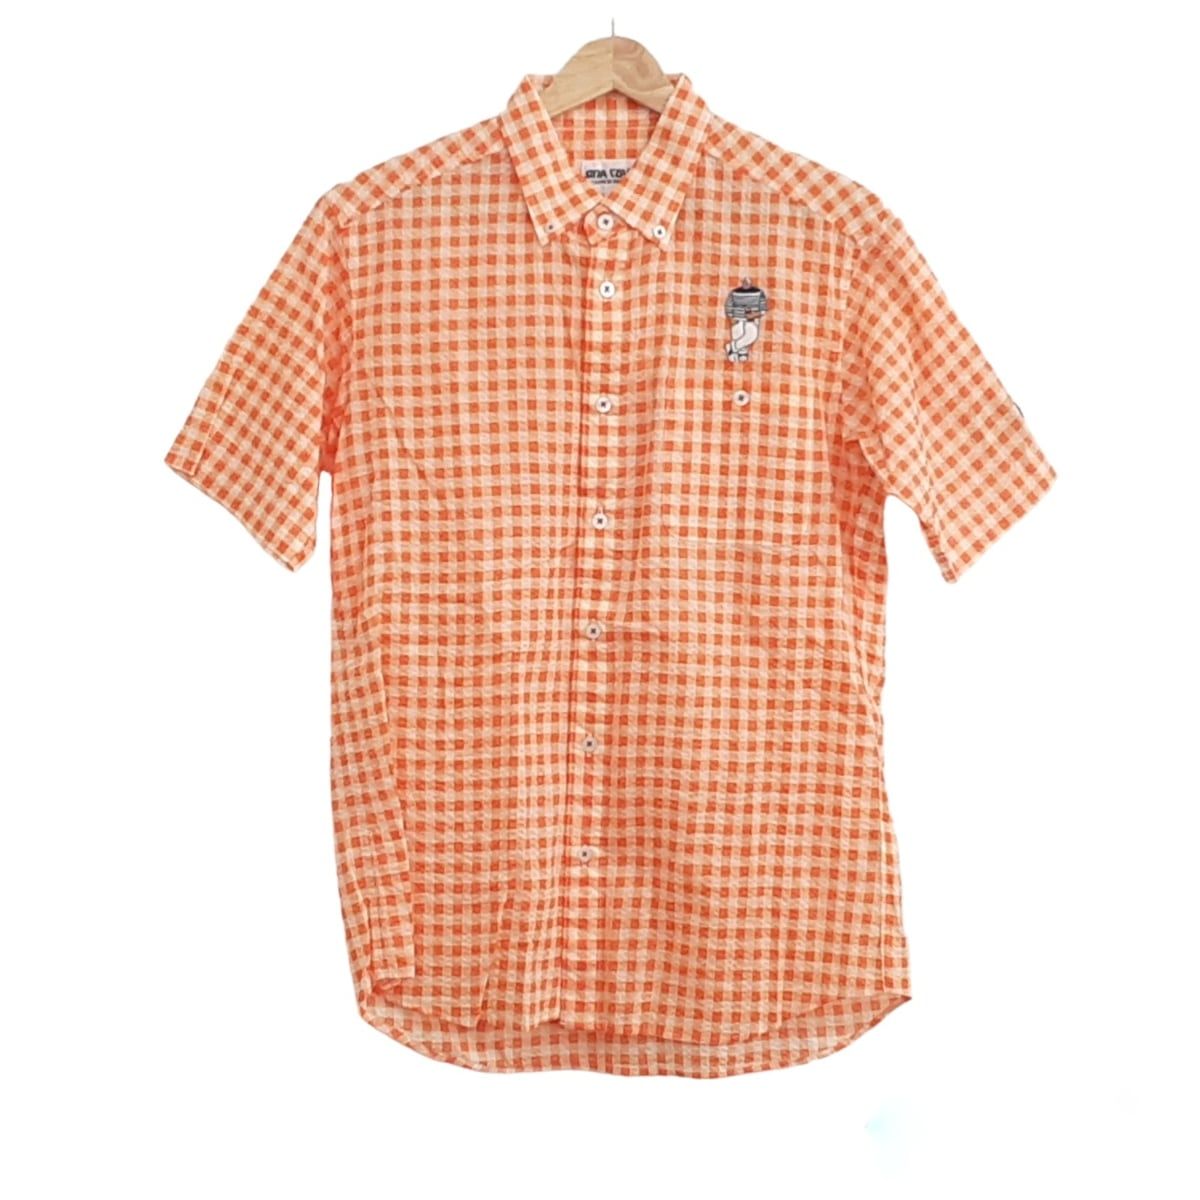 SINACOVA(シナコバ) 半袖シャツ サイズM メンズ美品 - 白×オレンジ